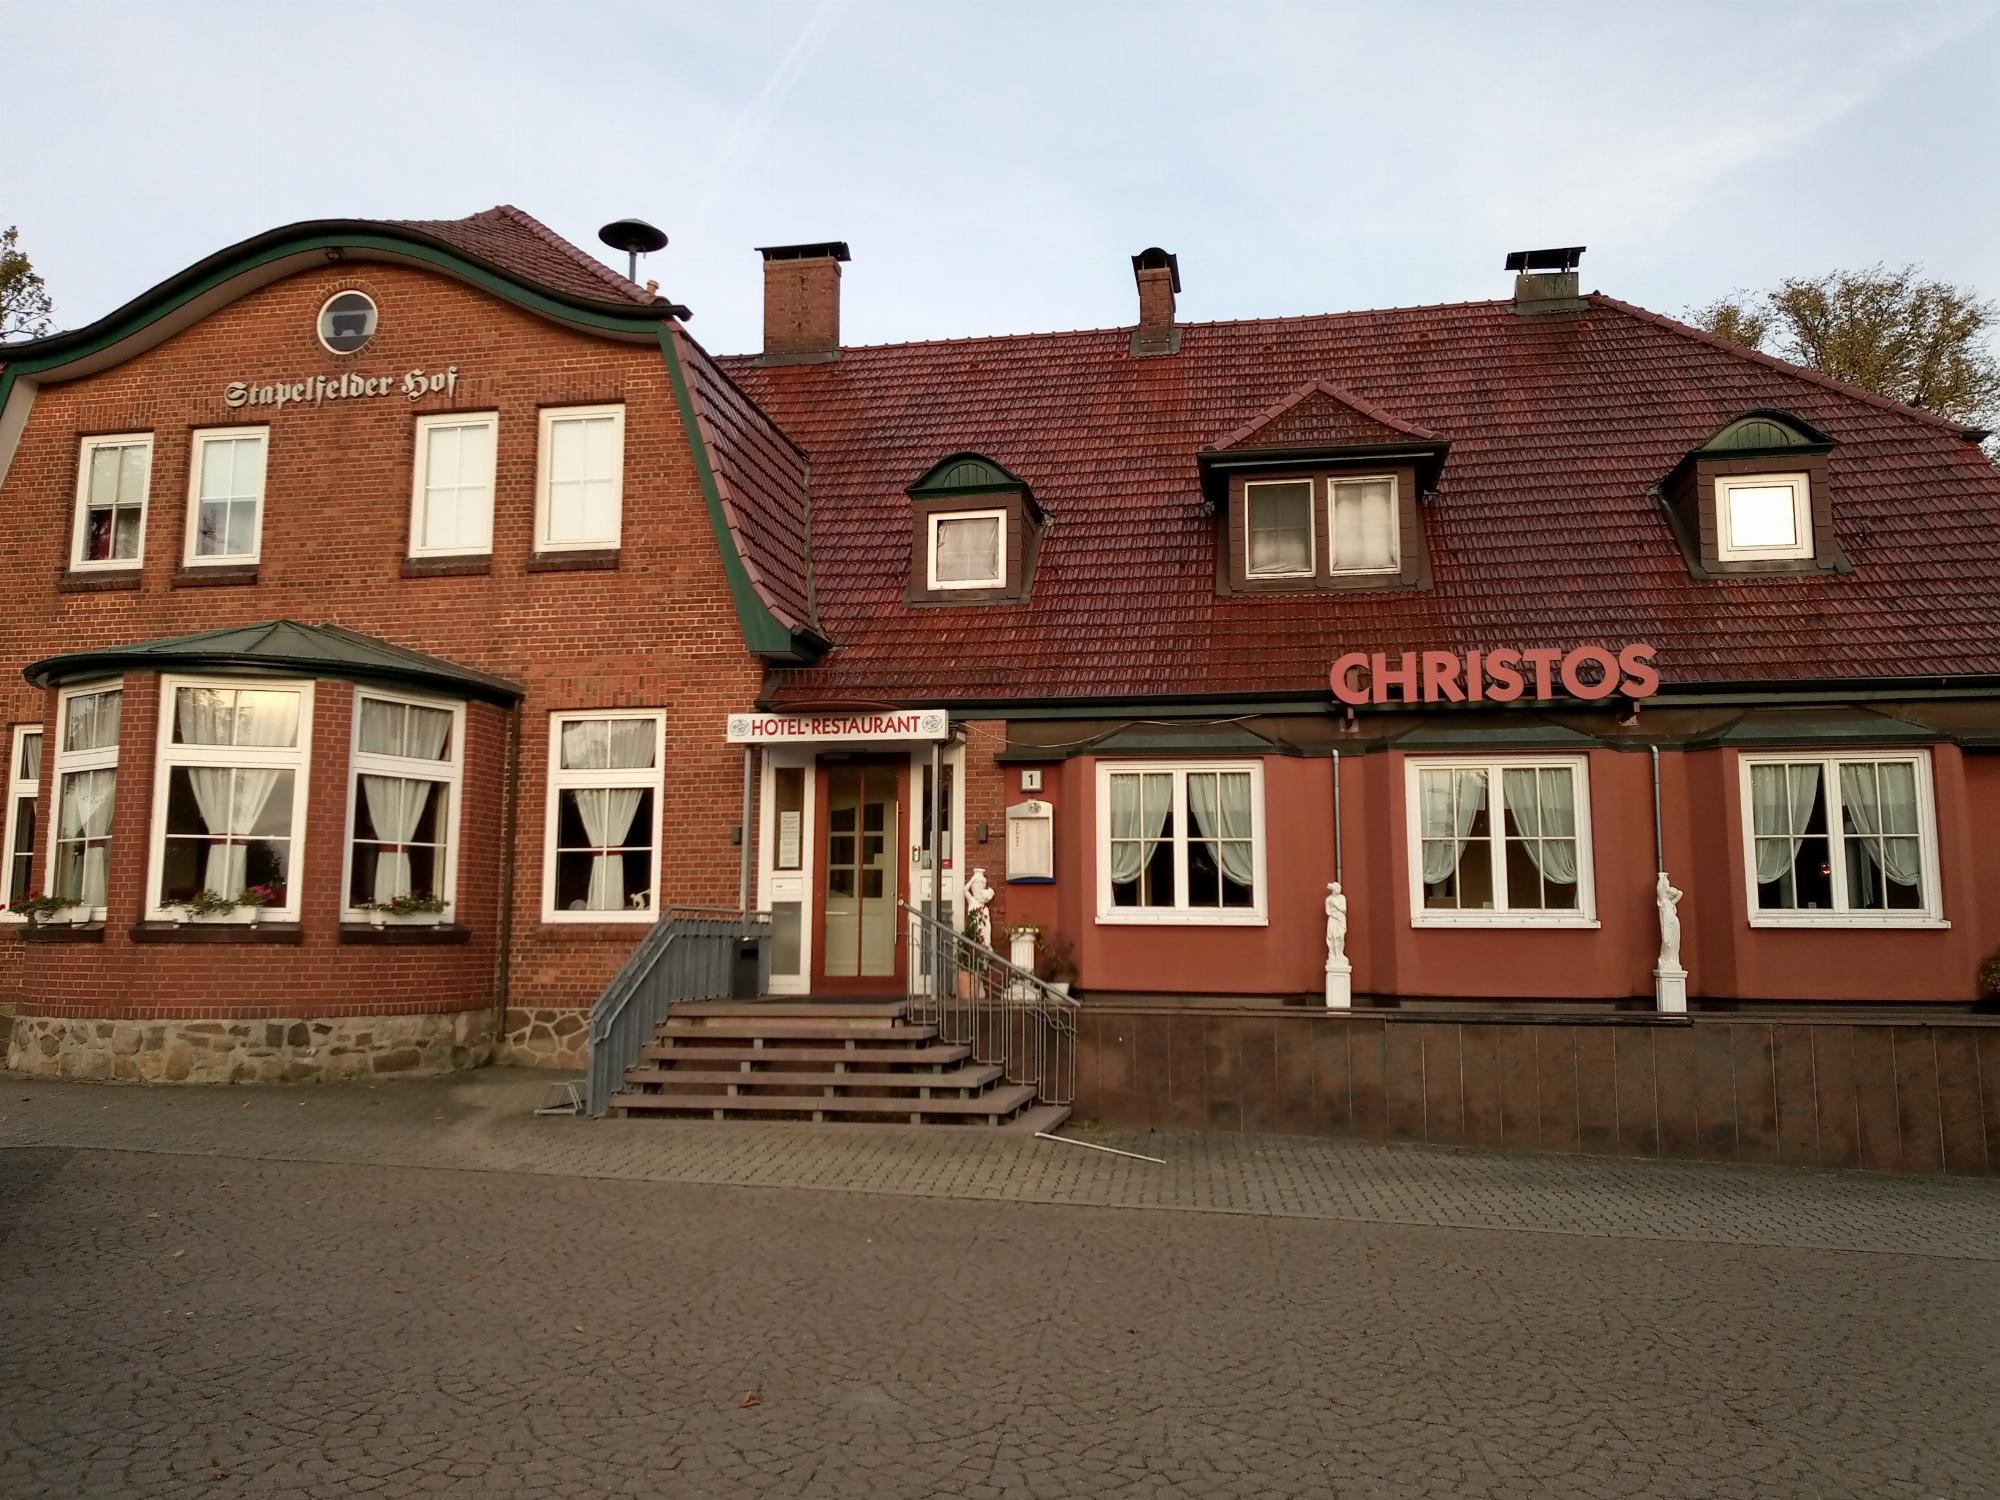 Stapelfelder Hof "Christos"